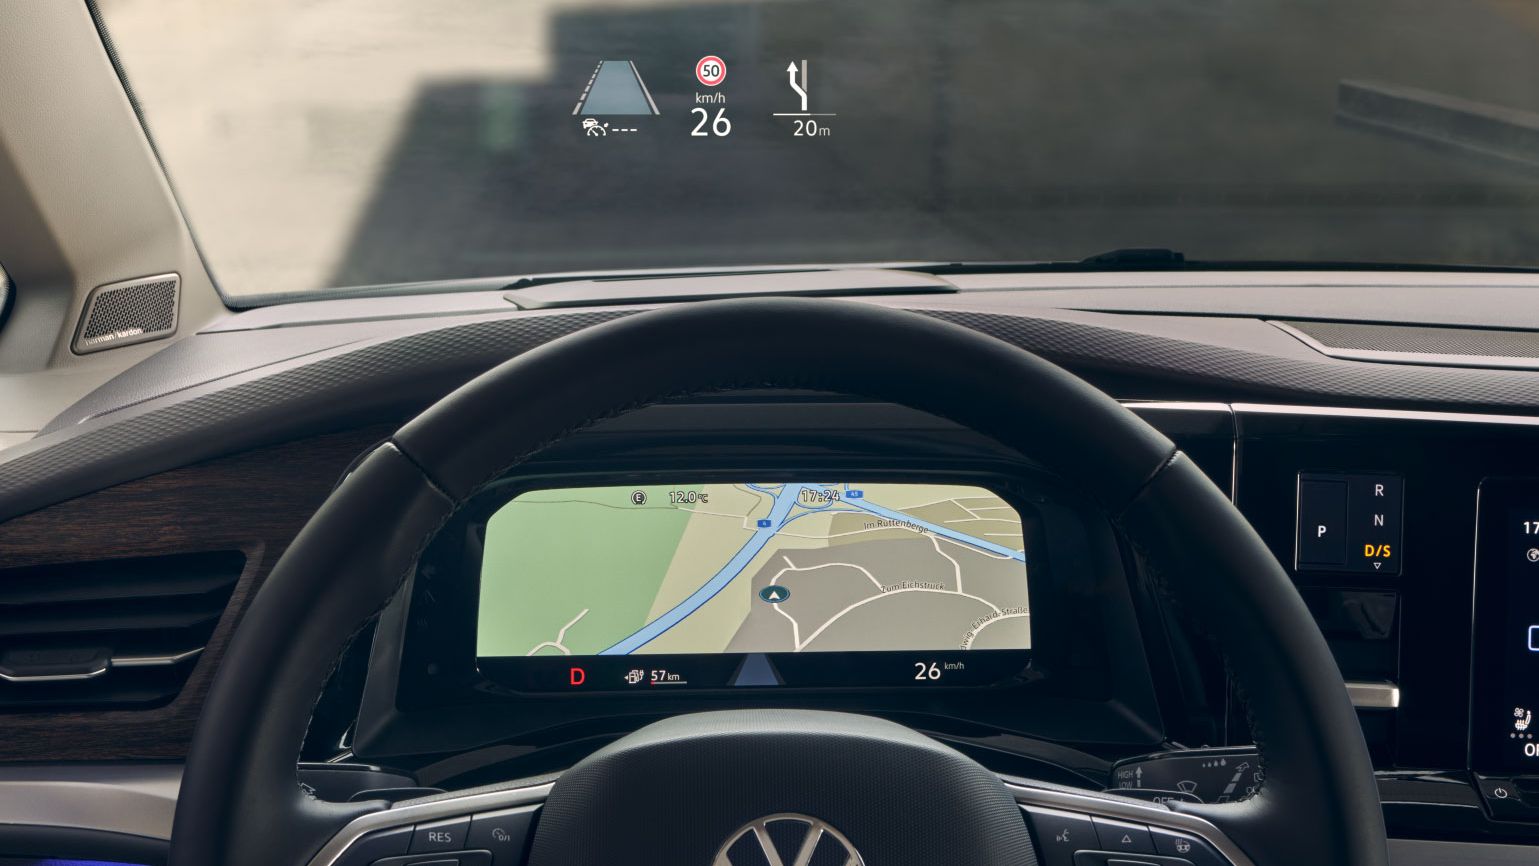 Ansicht des Volkswagen Navigationssystems